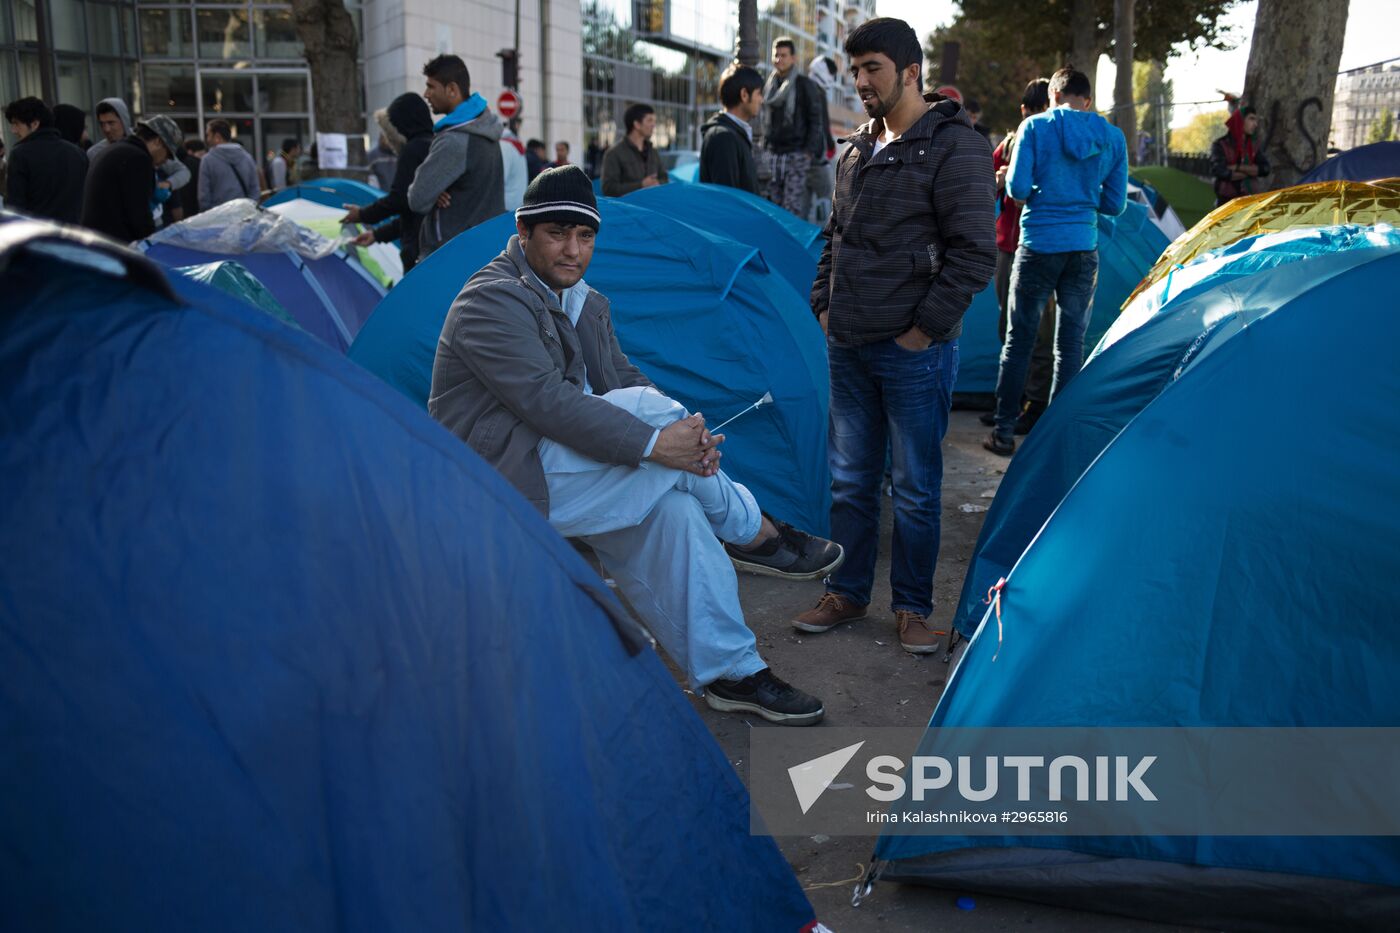 Situation at a Paris refugee camp